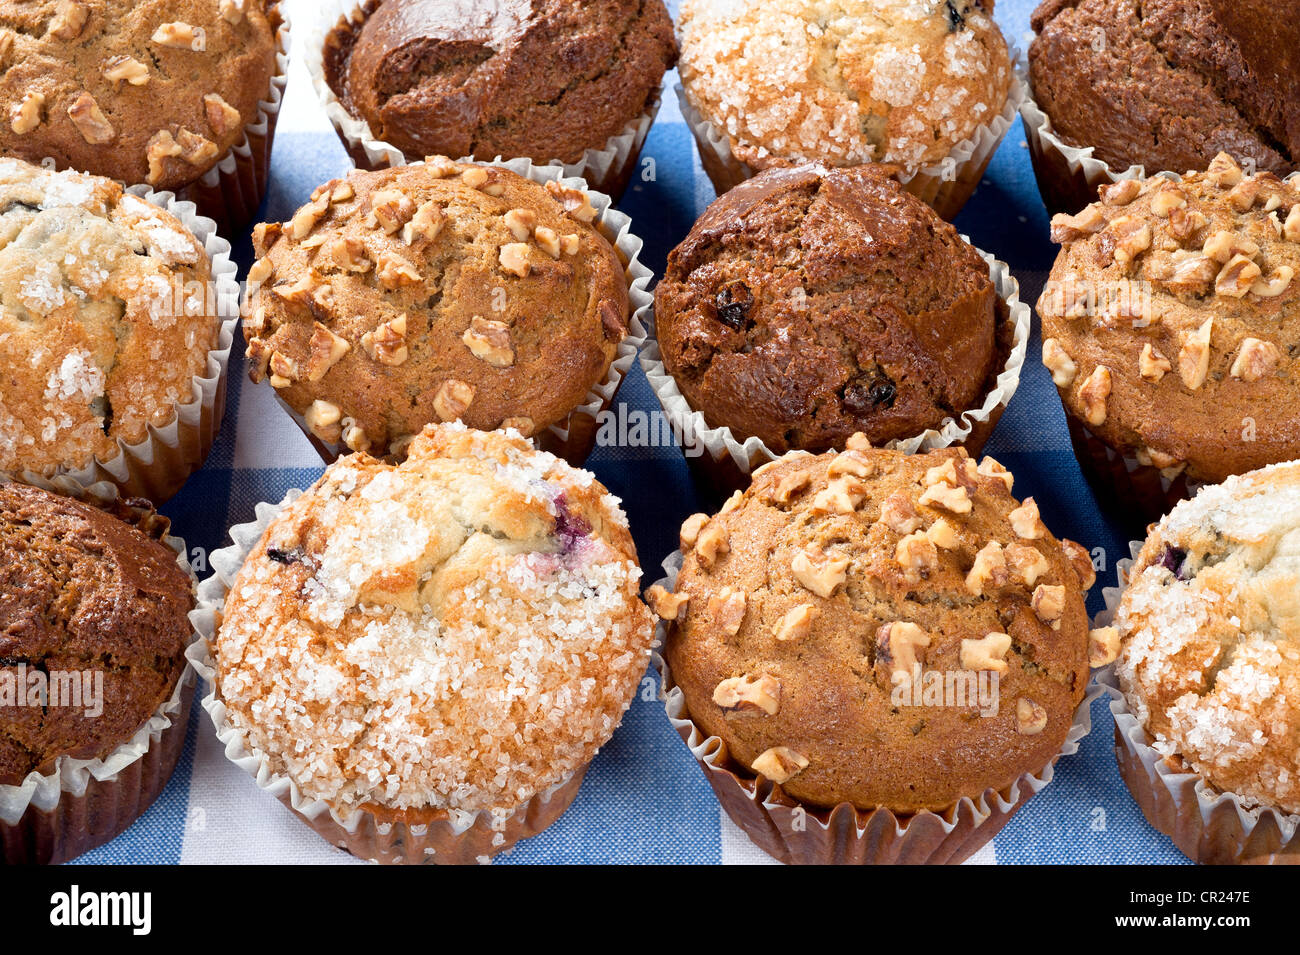 Un grupo de desayuno muffins recién horneados incluyendo blueberry, chocolate y nuez descansando sobre un mantel a cuadros. Foto de stock